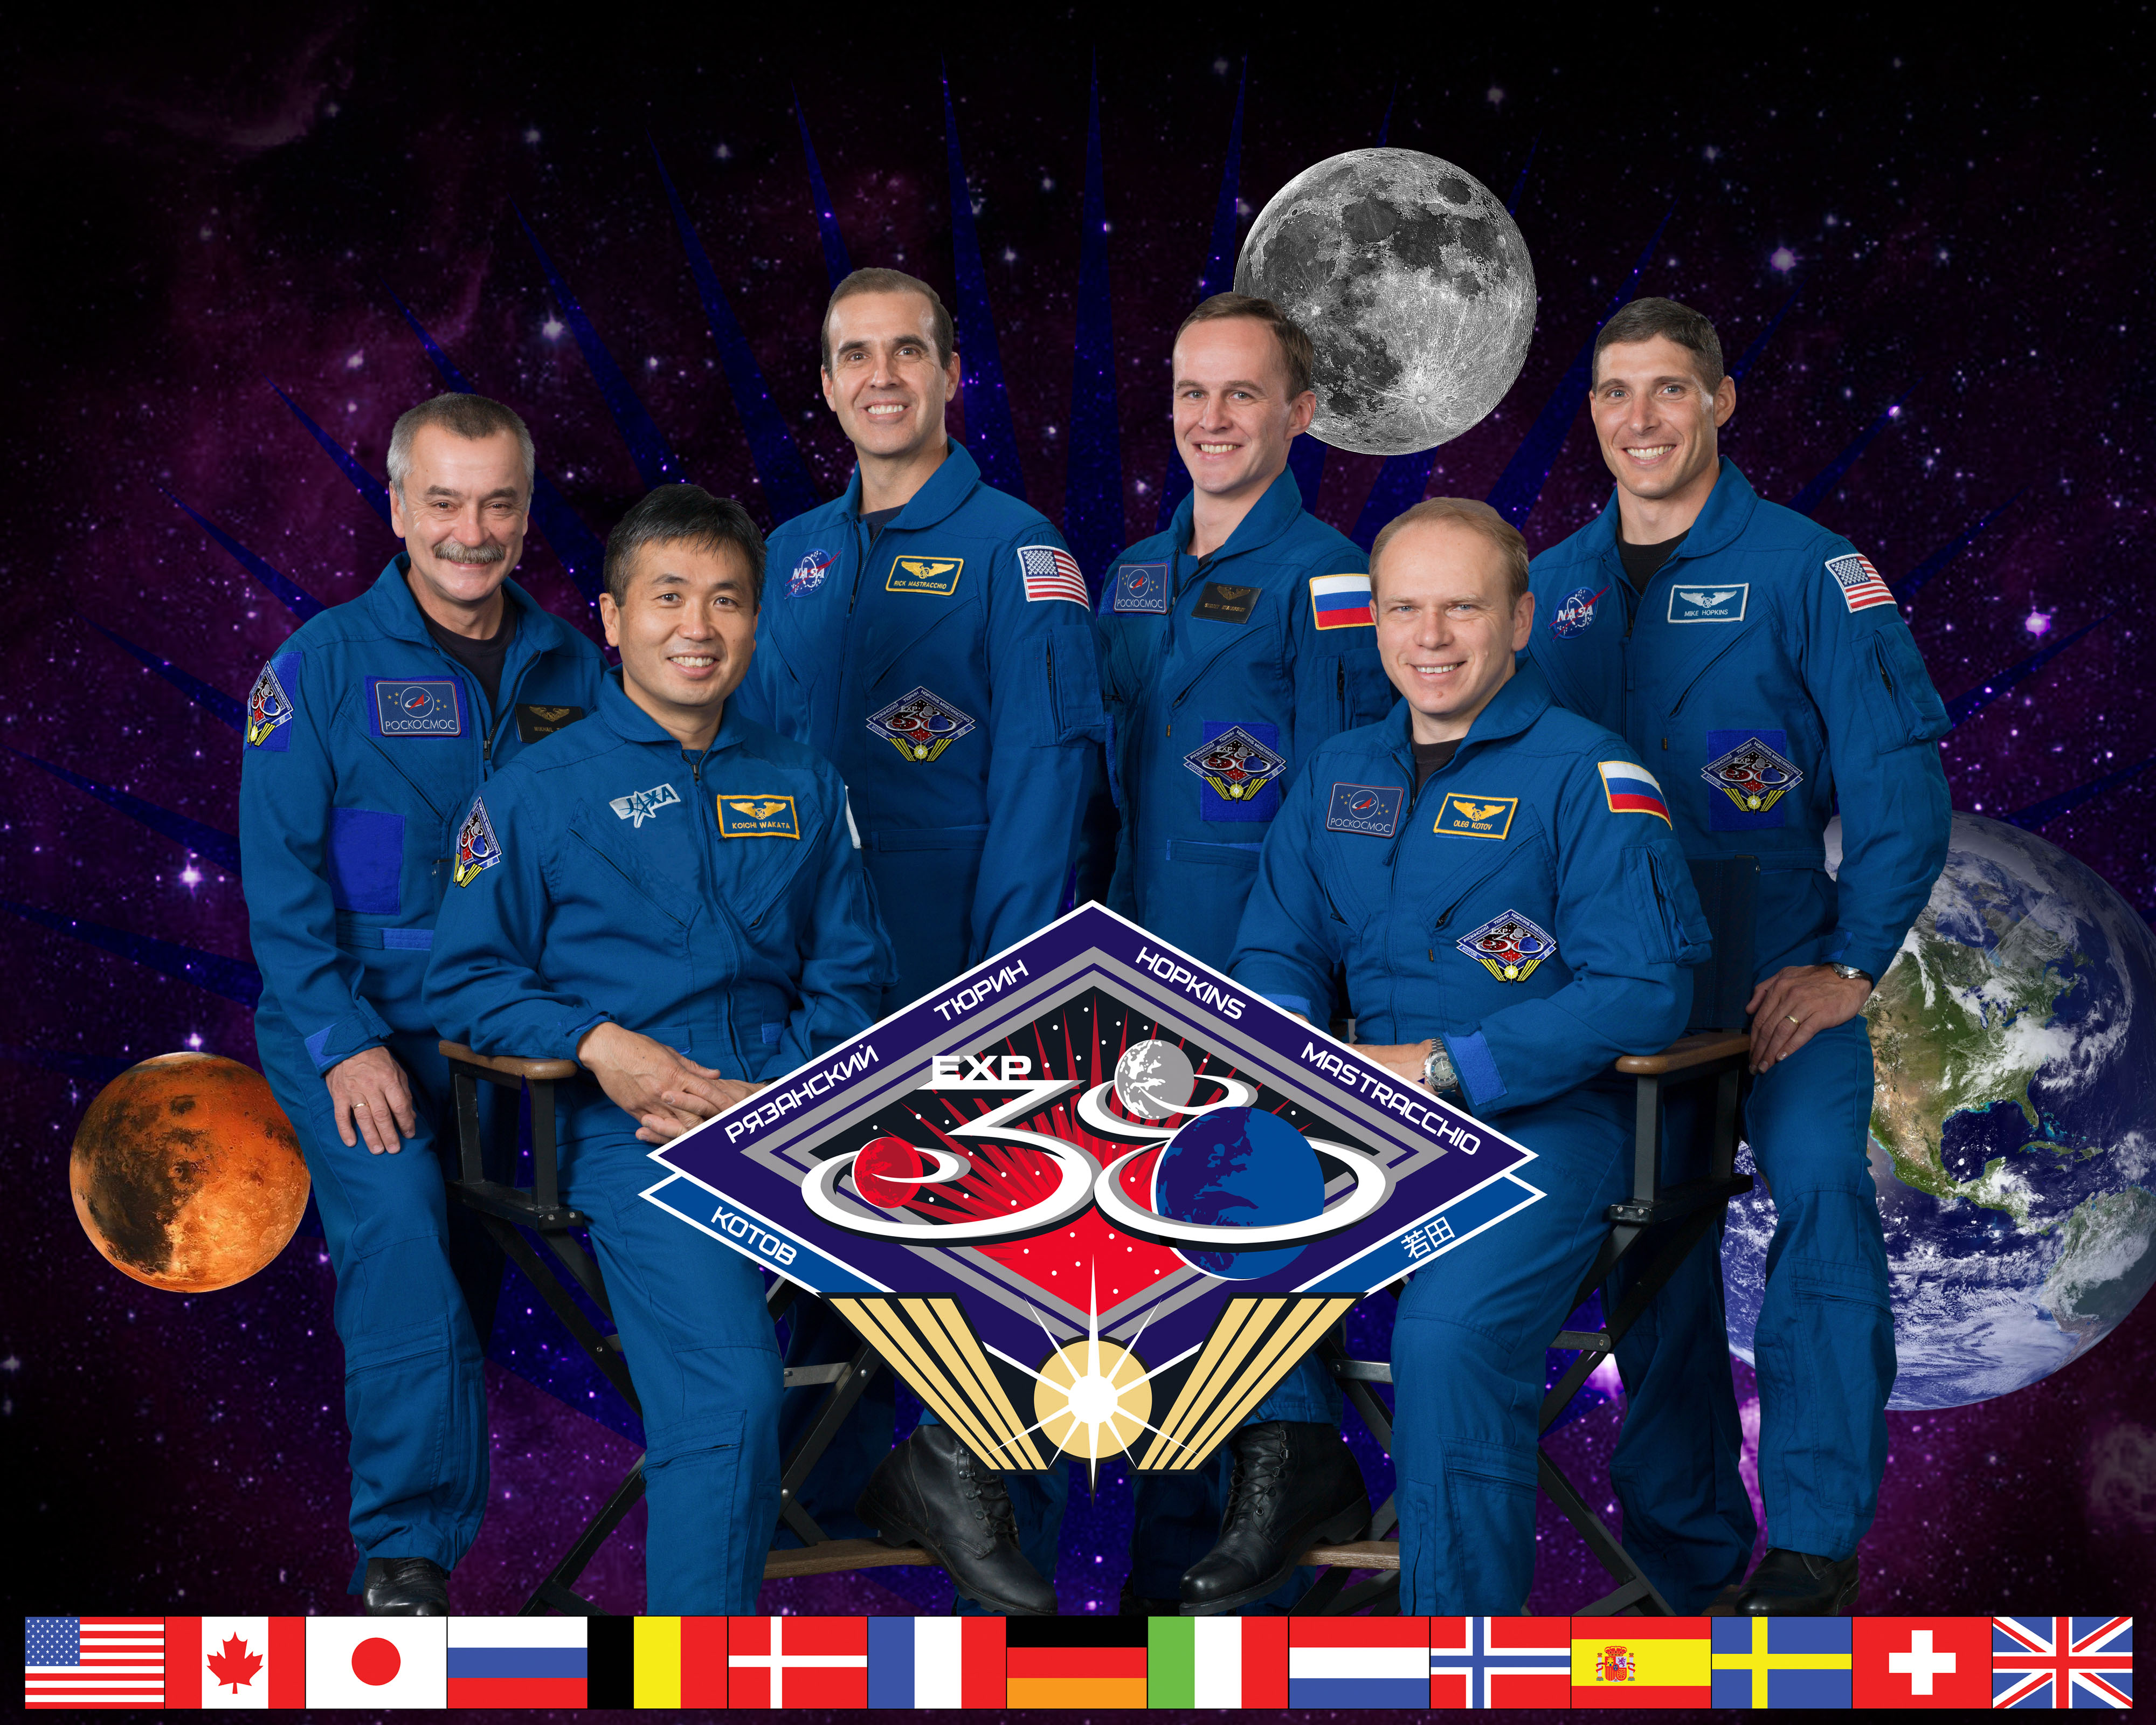 Expedition 38 crew portrait